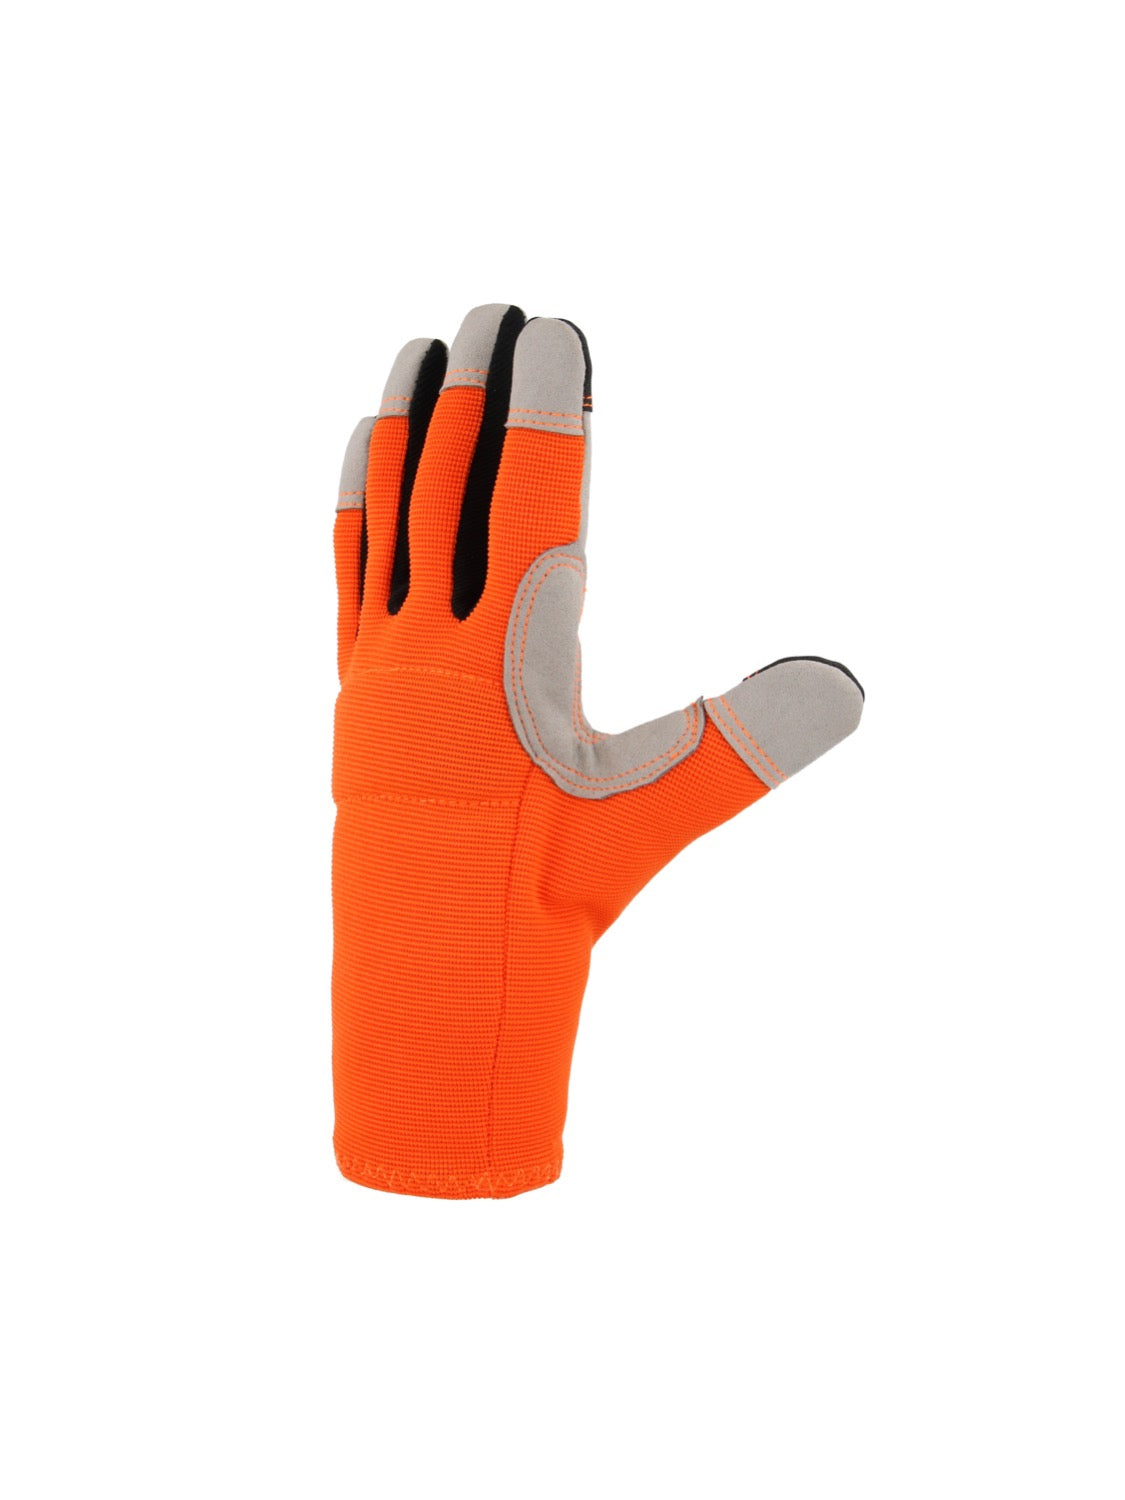 Donkey Gloves Unisex Fabric Gardening Gloves, Large